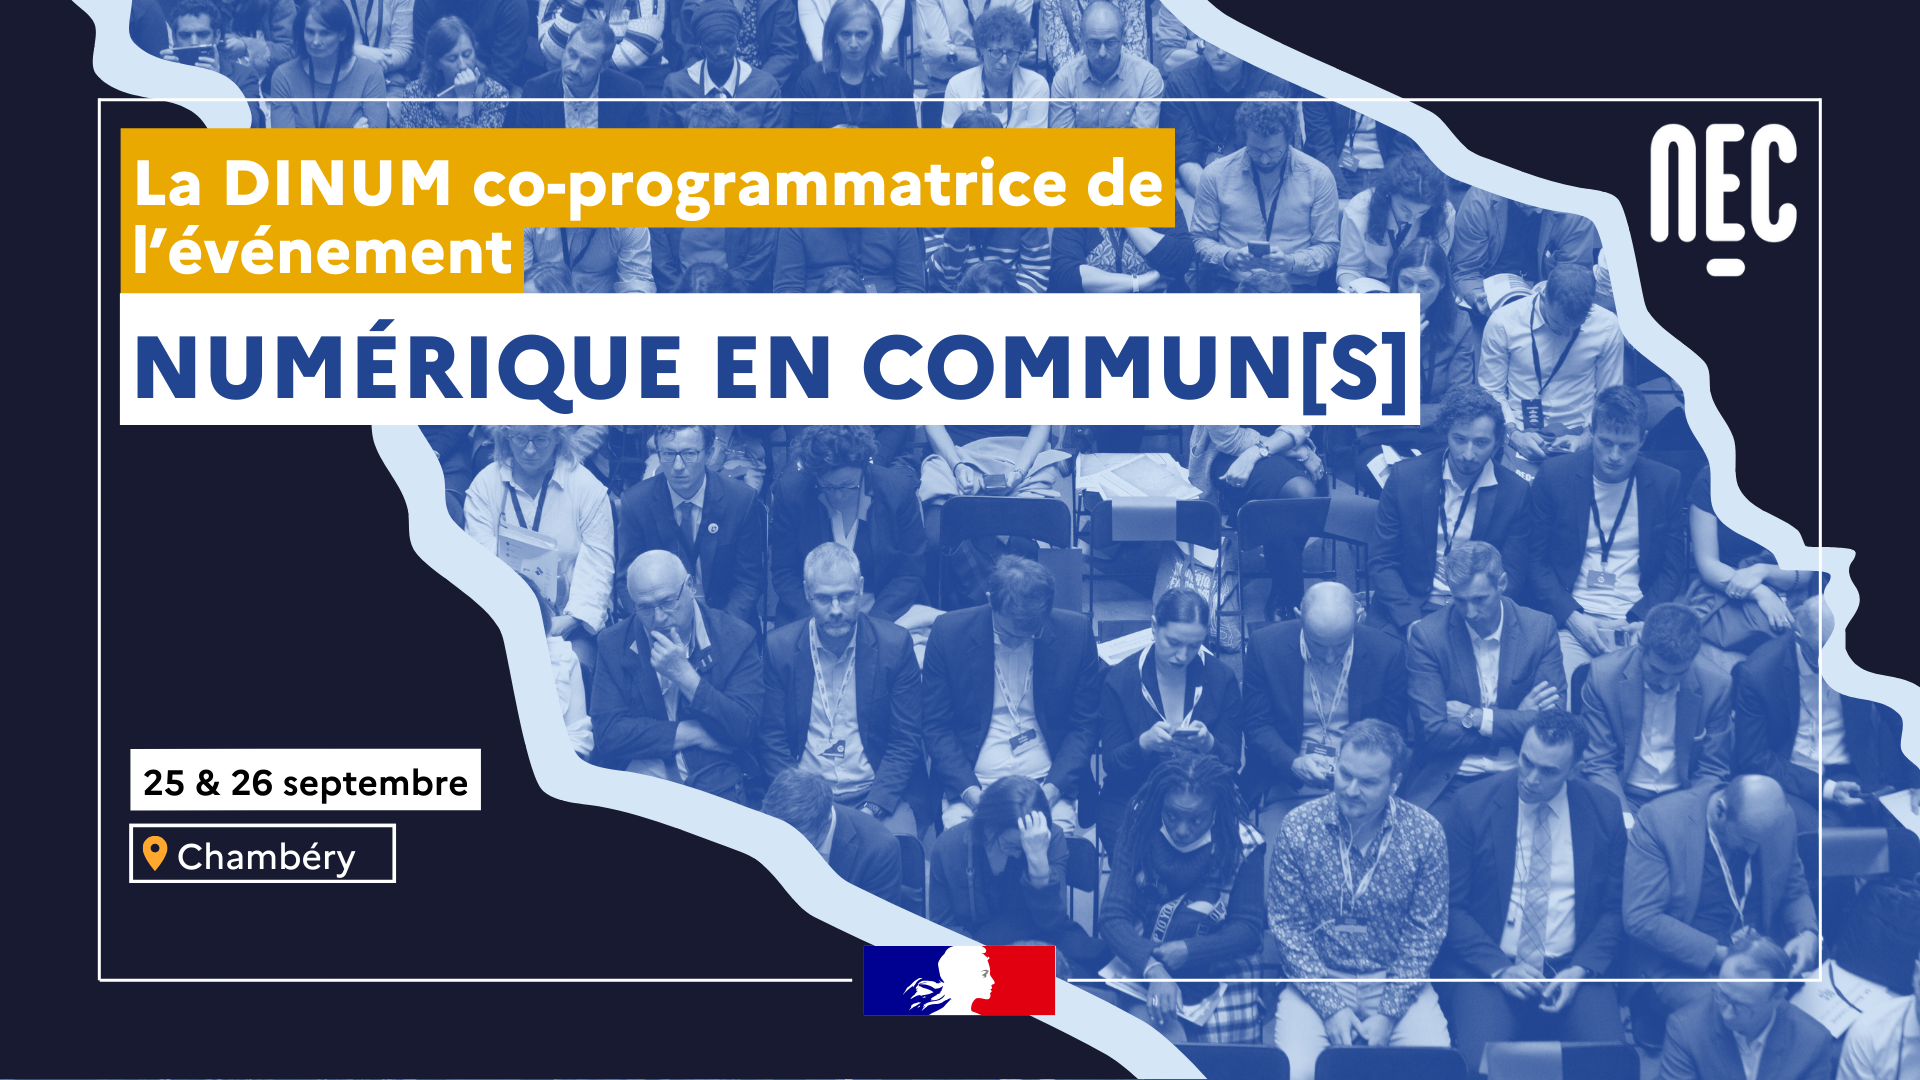 La DINUM co-programmatrice de l'événement Numérique en communs 25 et 26 septembre Chambéry